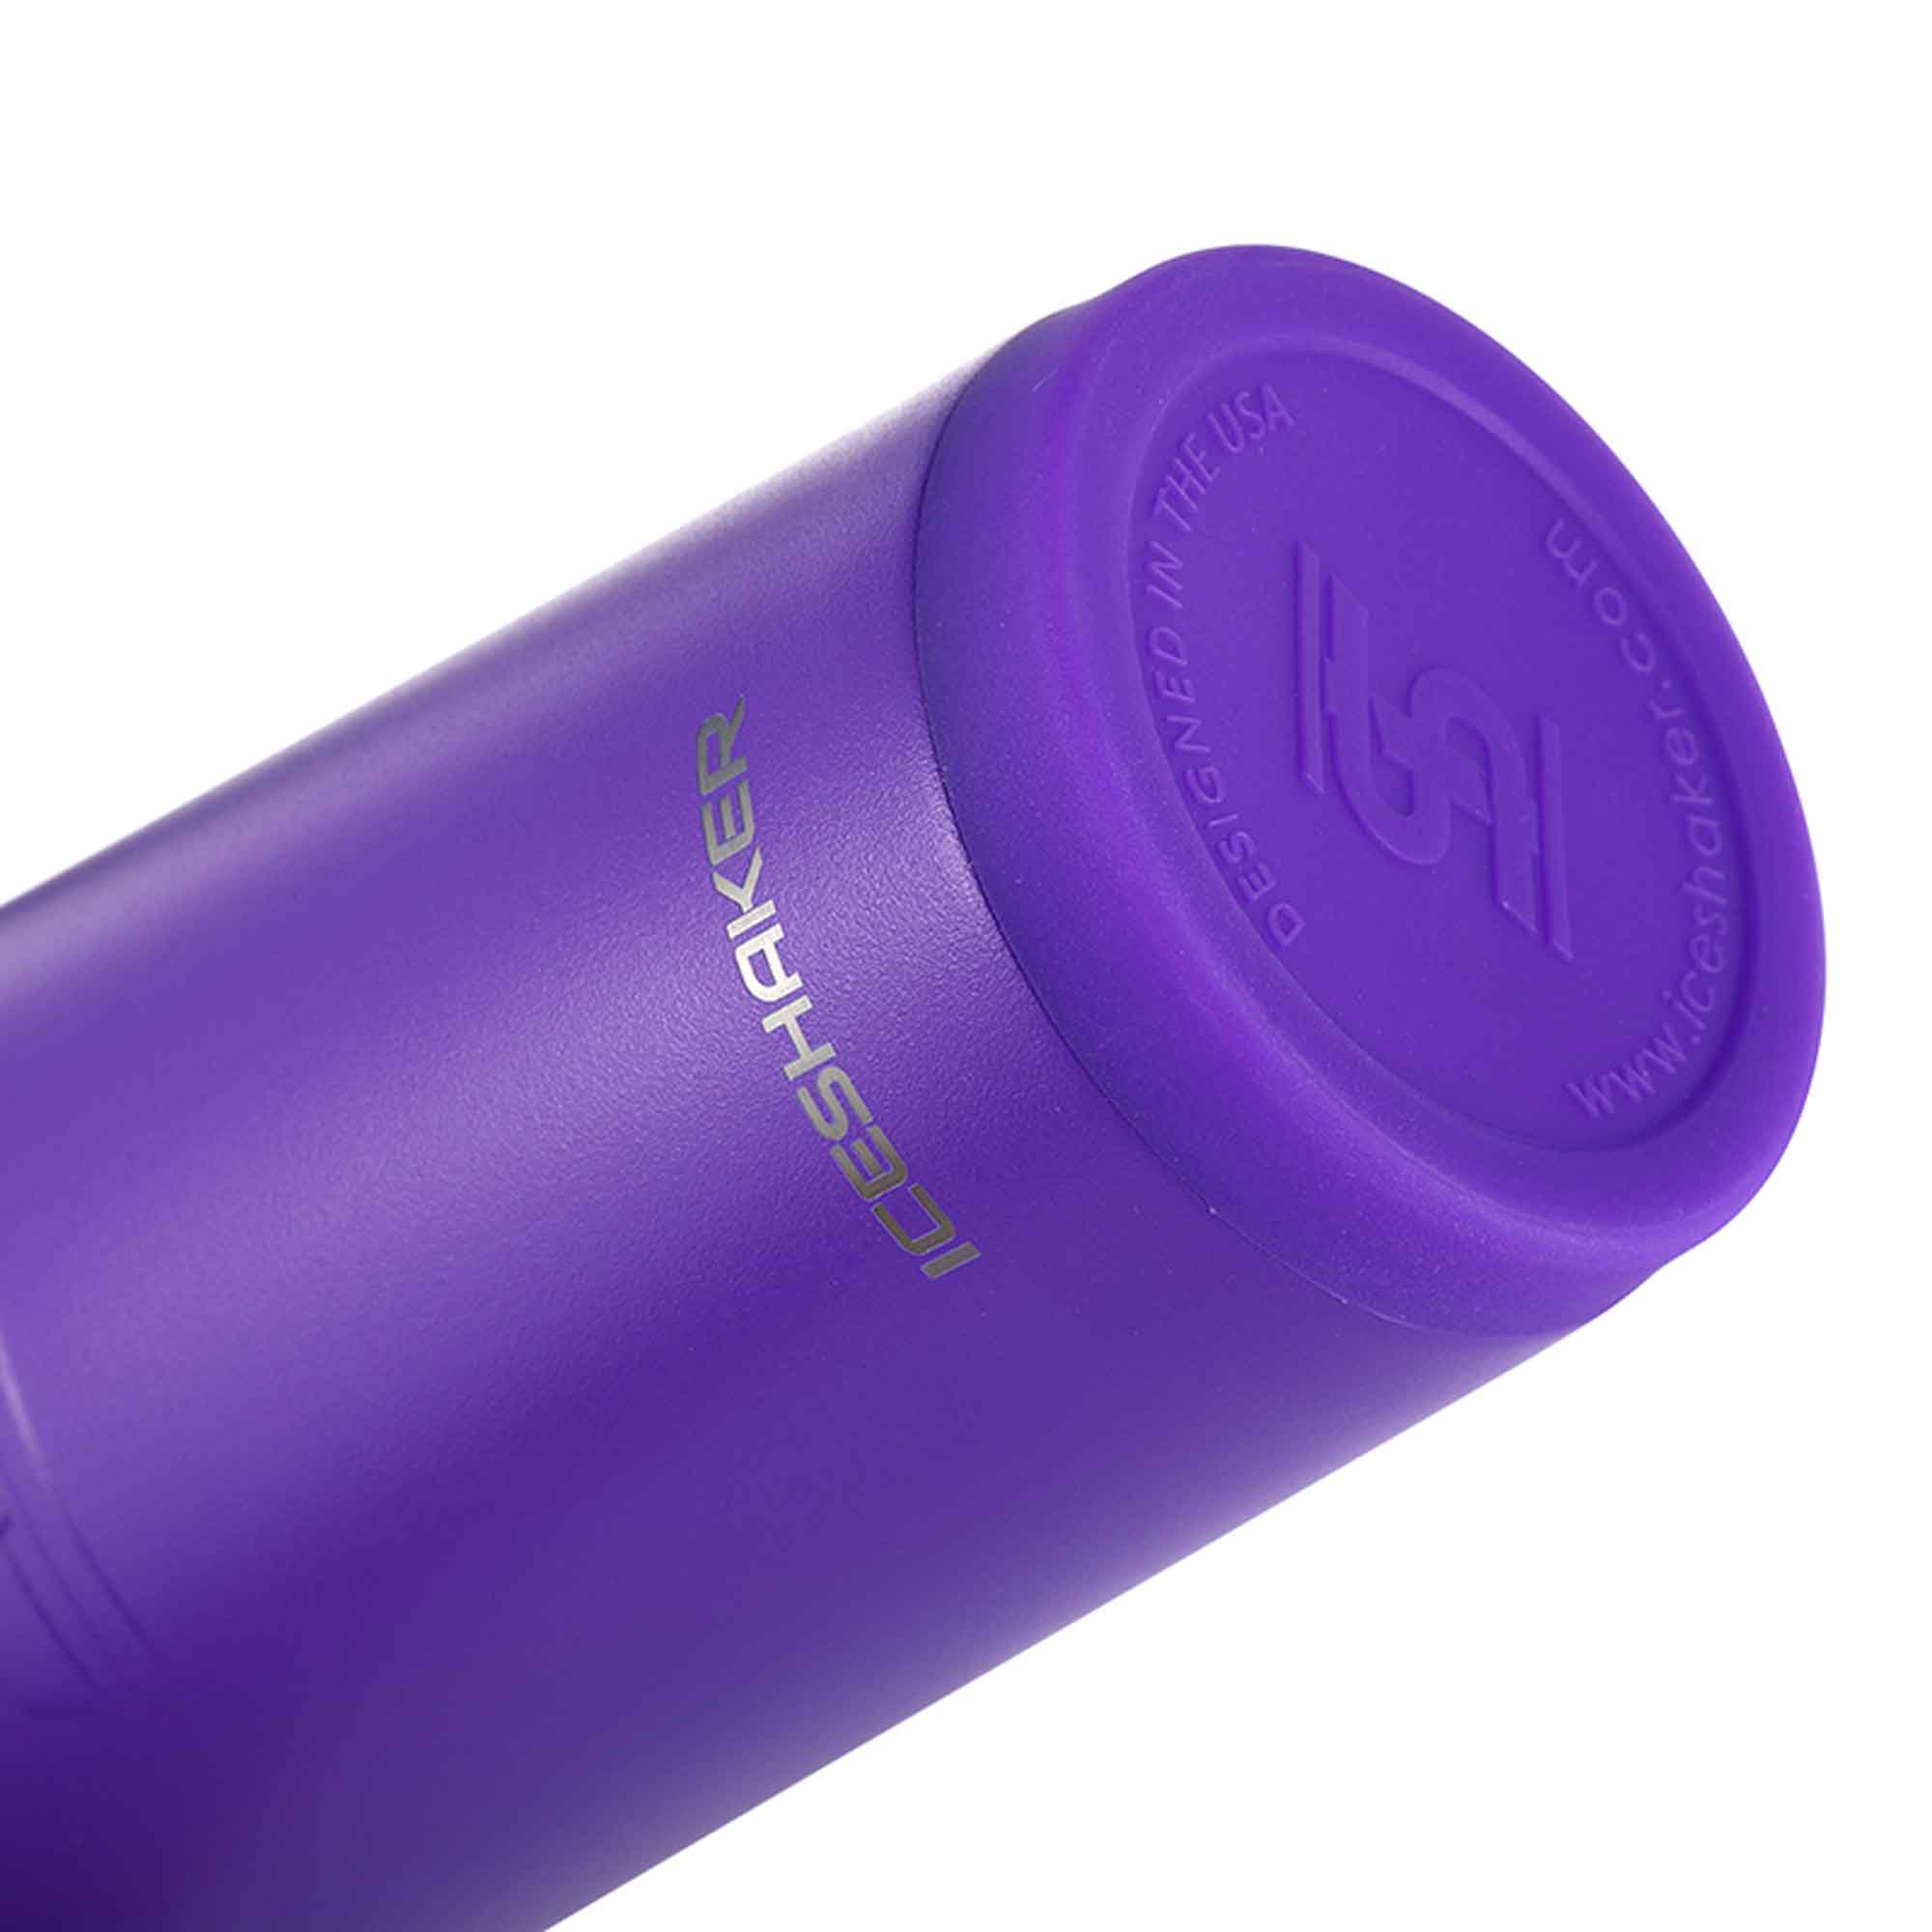 26oz Sport Bottle - Purple